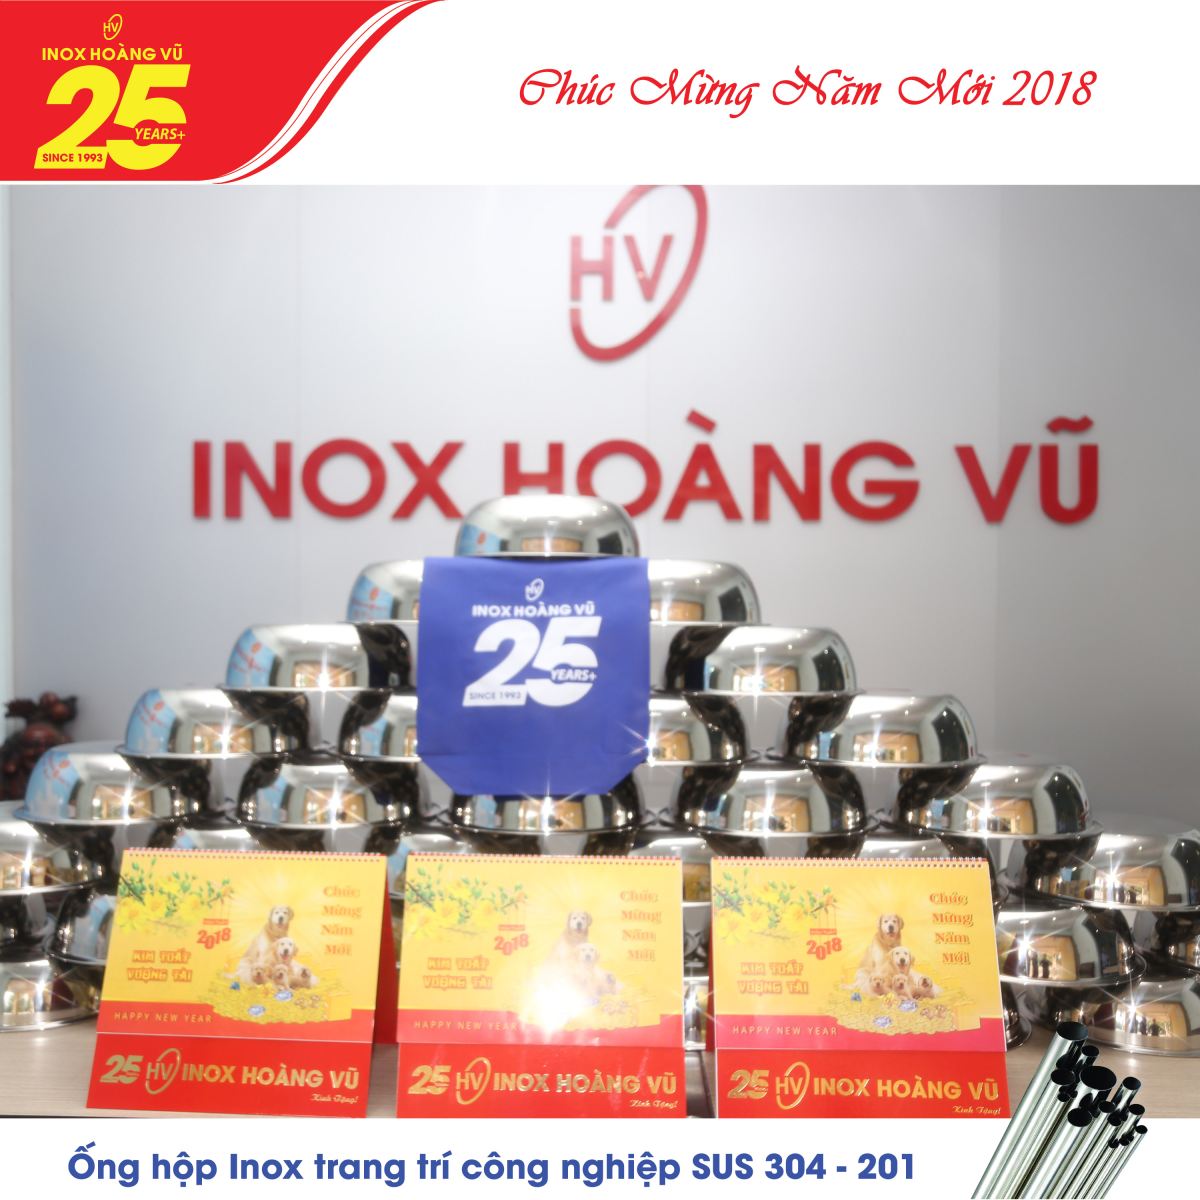 Tập đoàn Inox Hoàng Vũ tặng quà khách hàng nhân dịp năm mới 2018 & kỷ niệm 25 năm thành lập